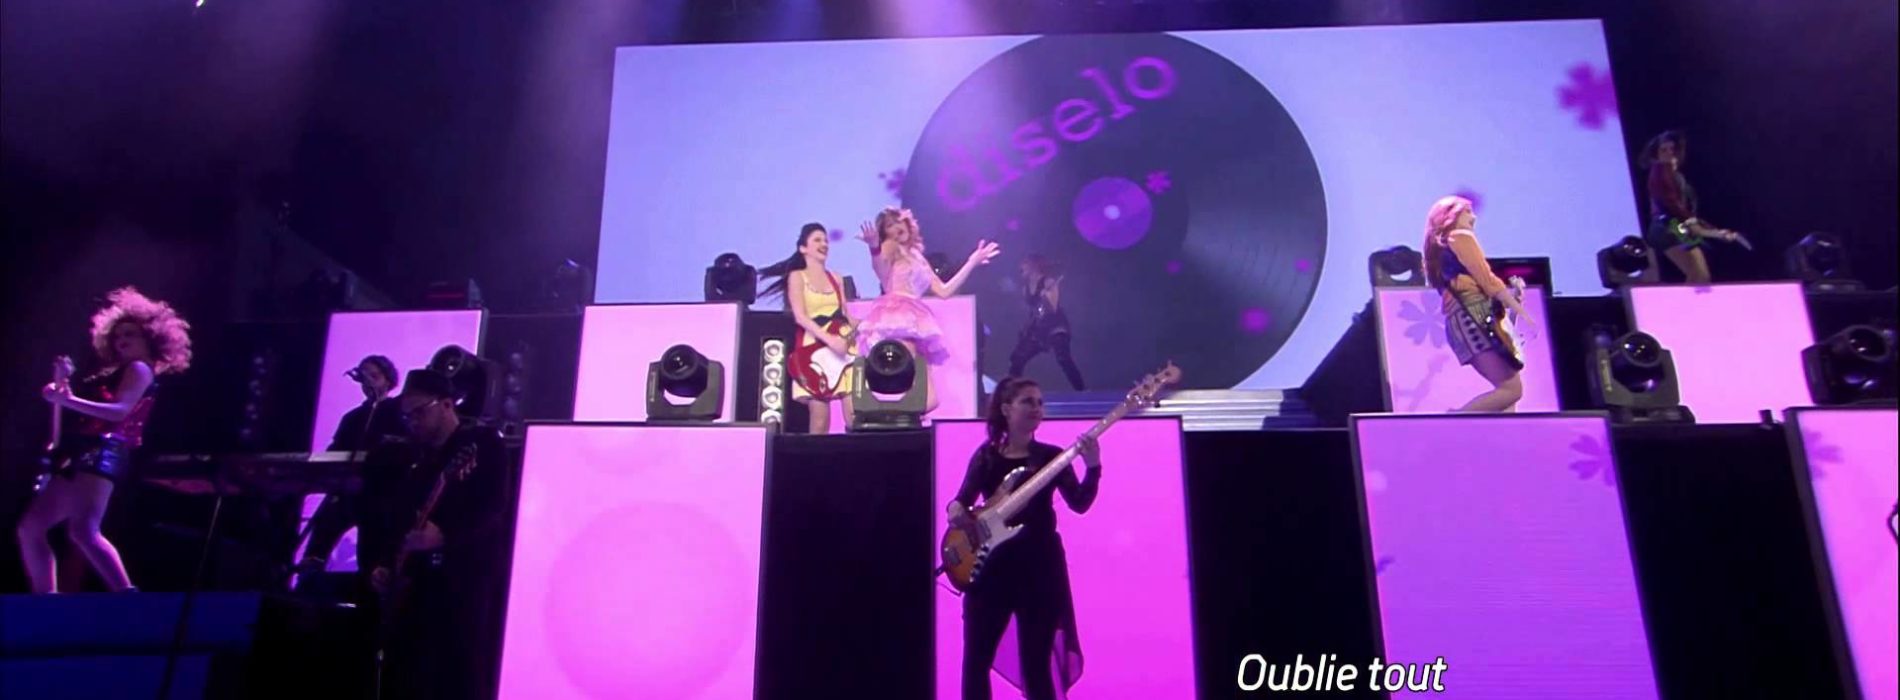 Violetta in Concert – Veo veo